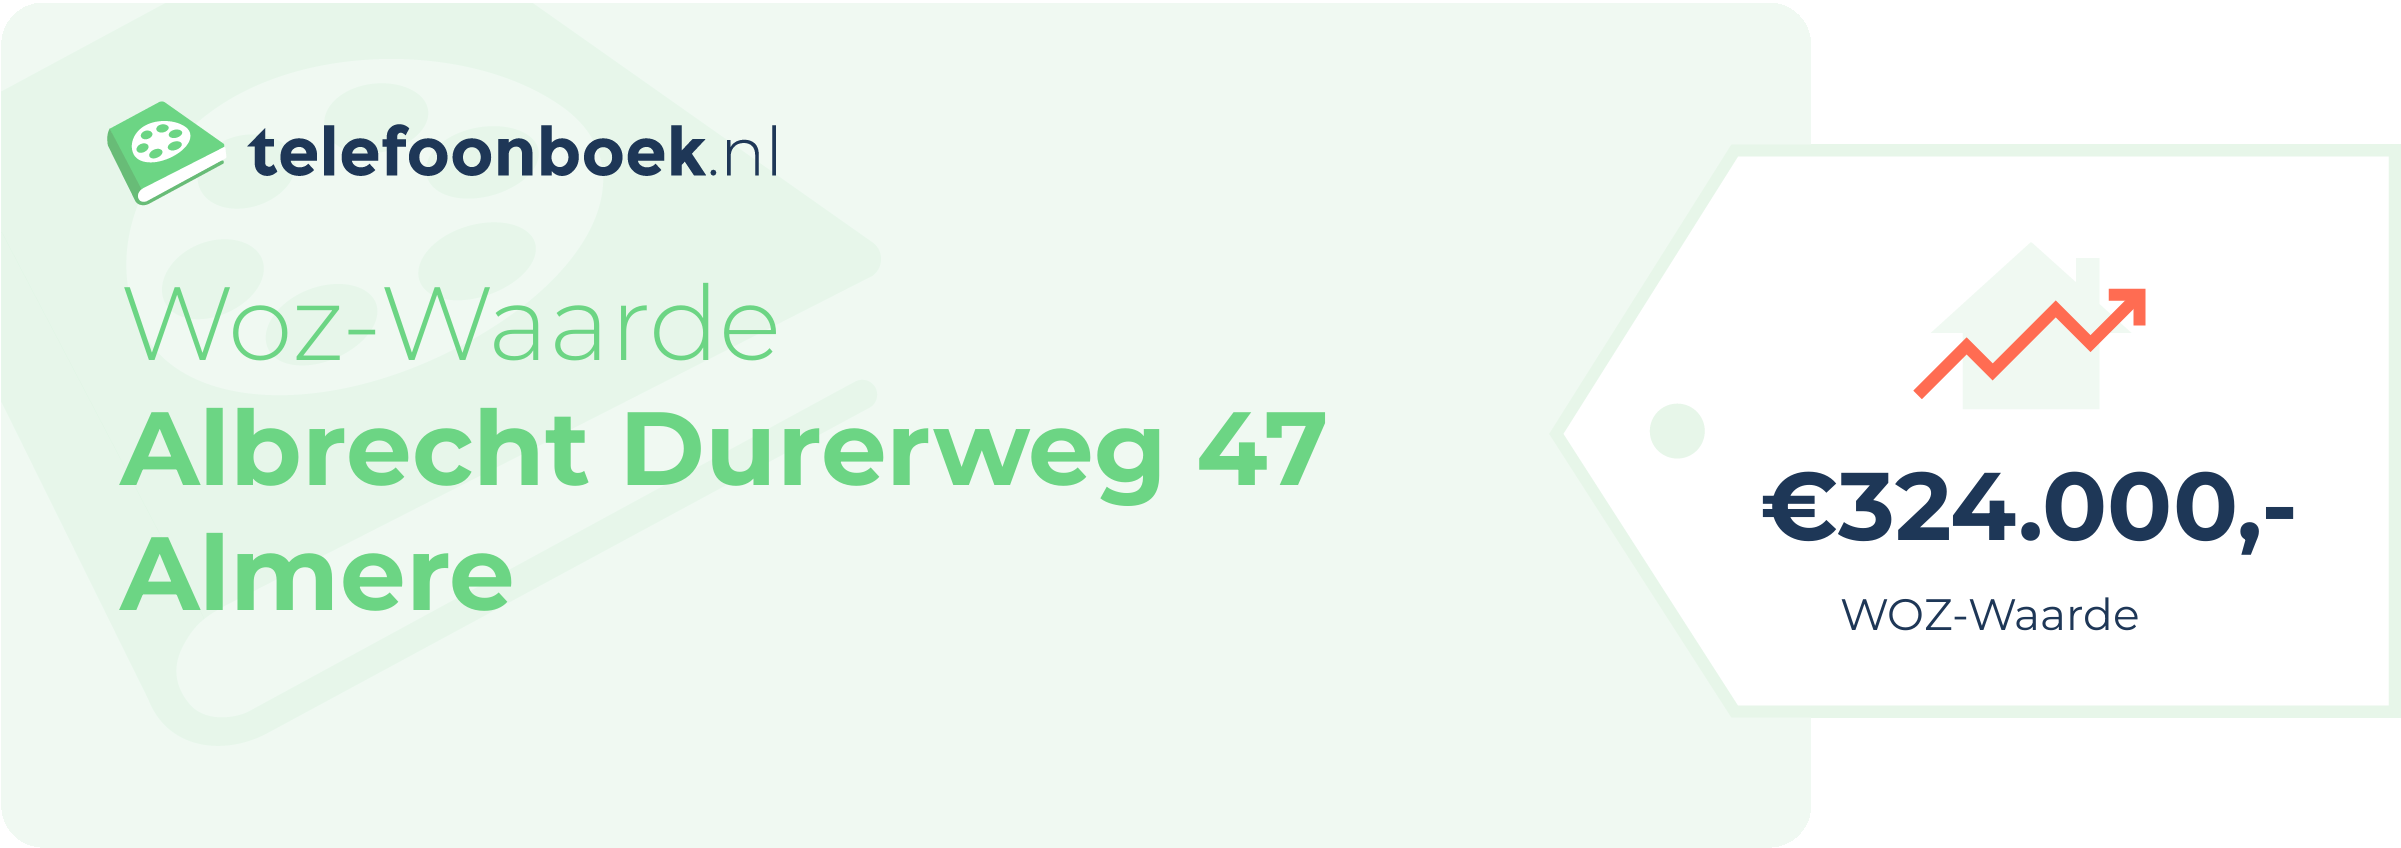 WOZ-waarde Albrecht Durerweg 47 Almere